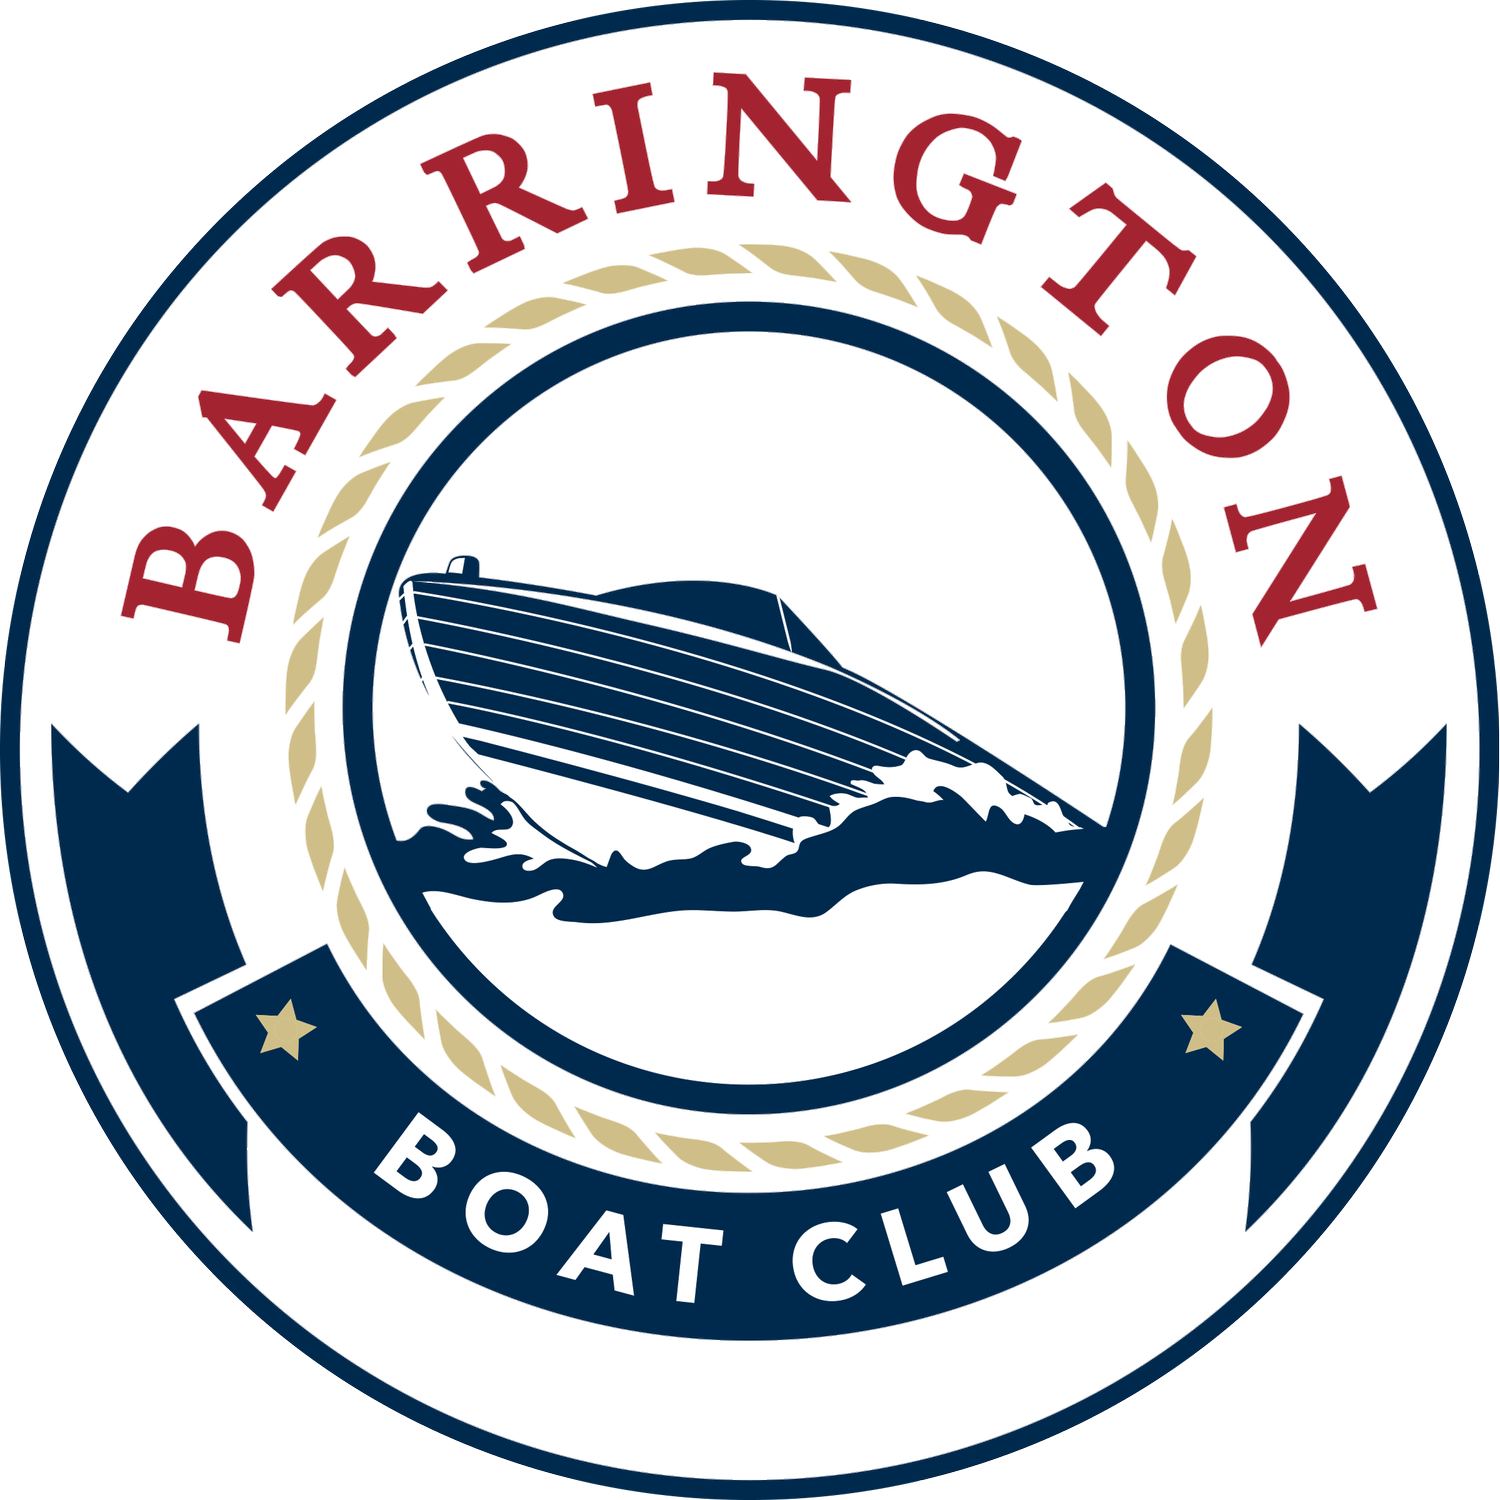 Barrington Boat Club